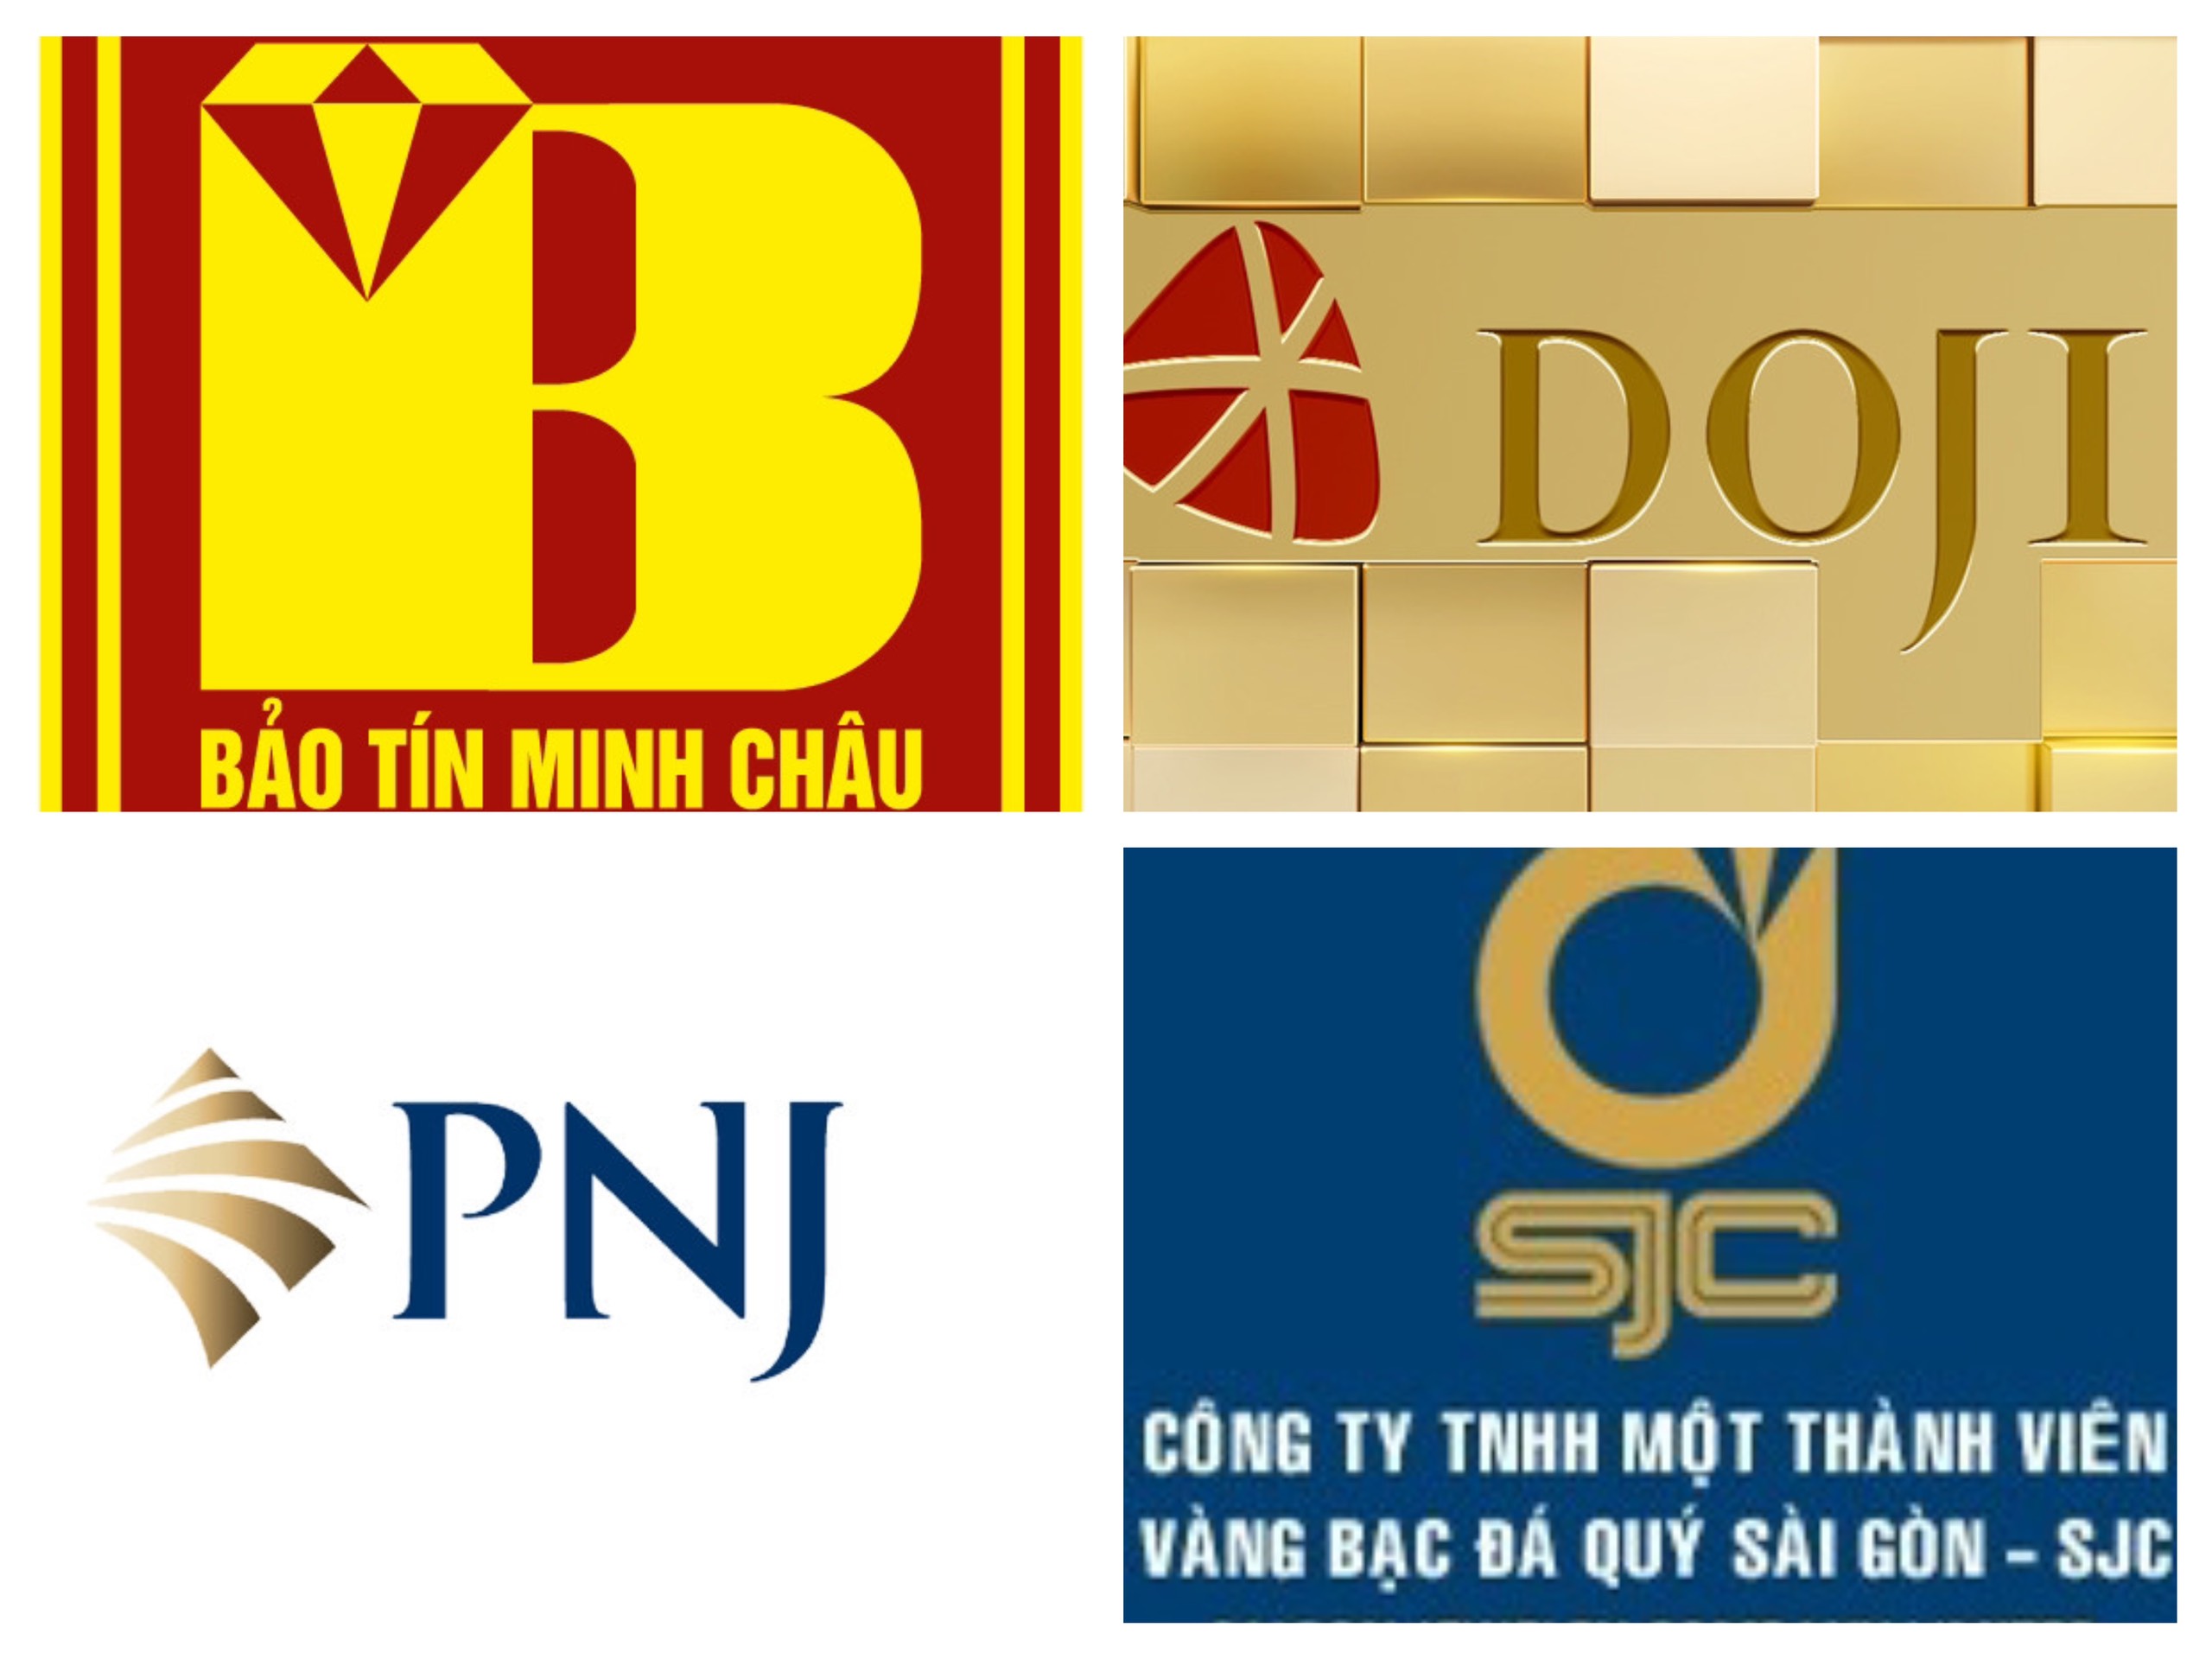 SJC, Doji, PNJ và Bảo Tín Minh Châu bị thanh tra vàng: Hé mở loạt con số ít được 